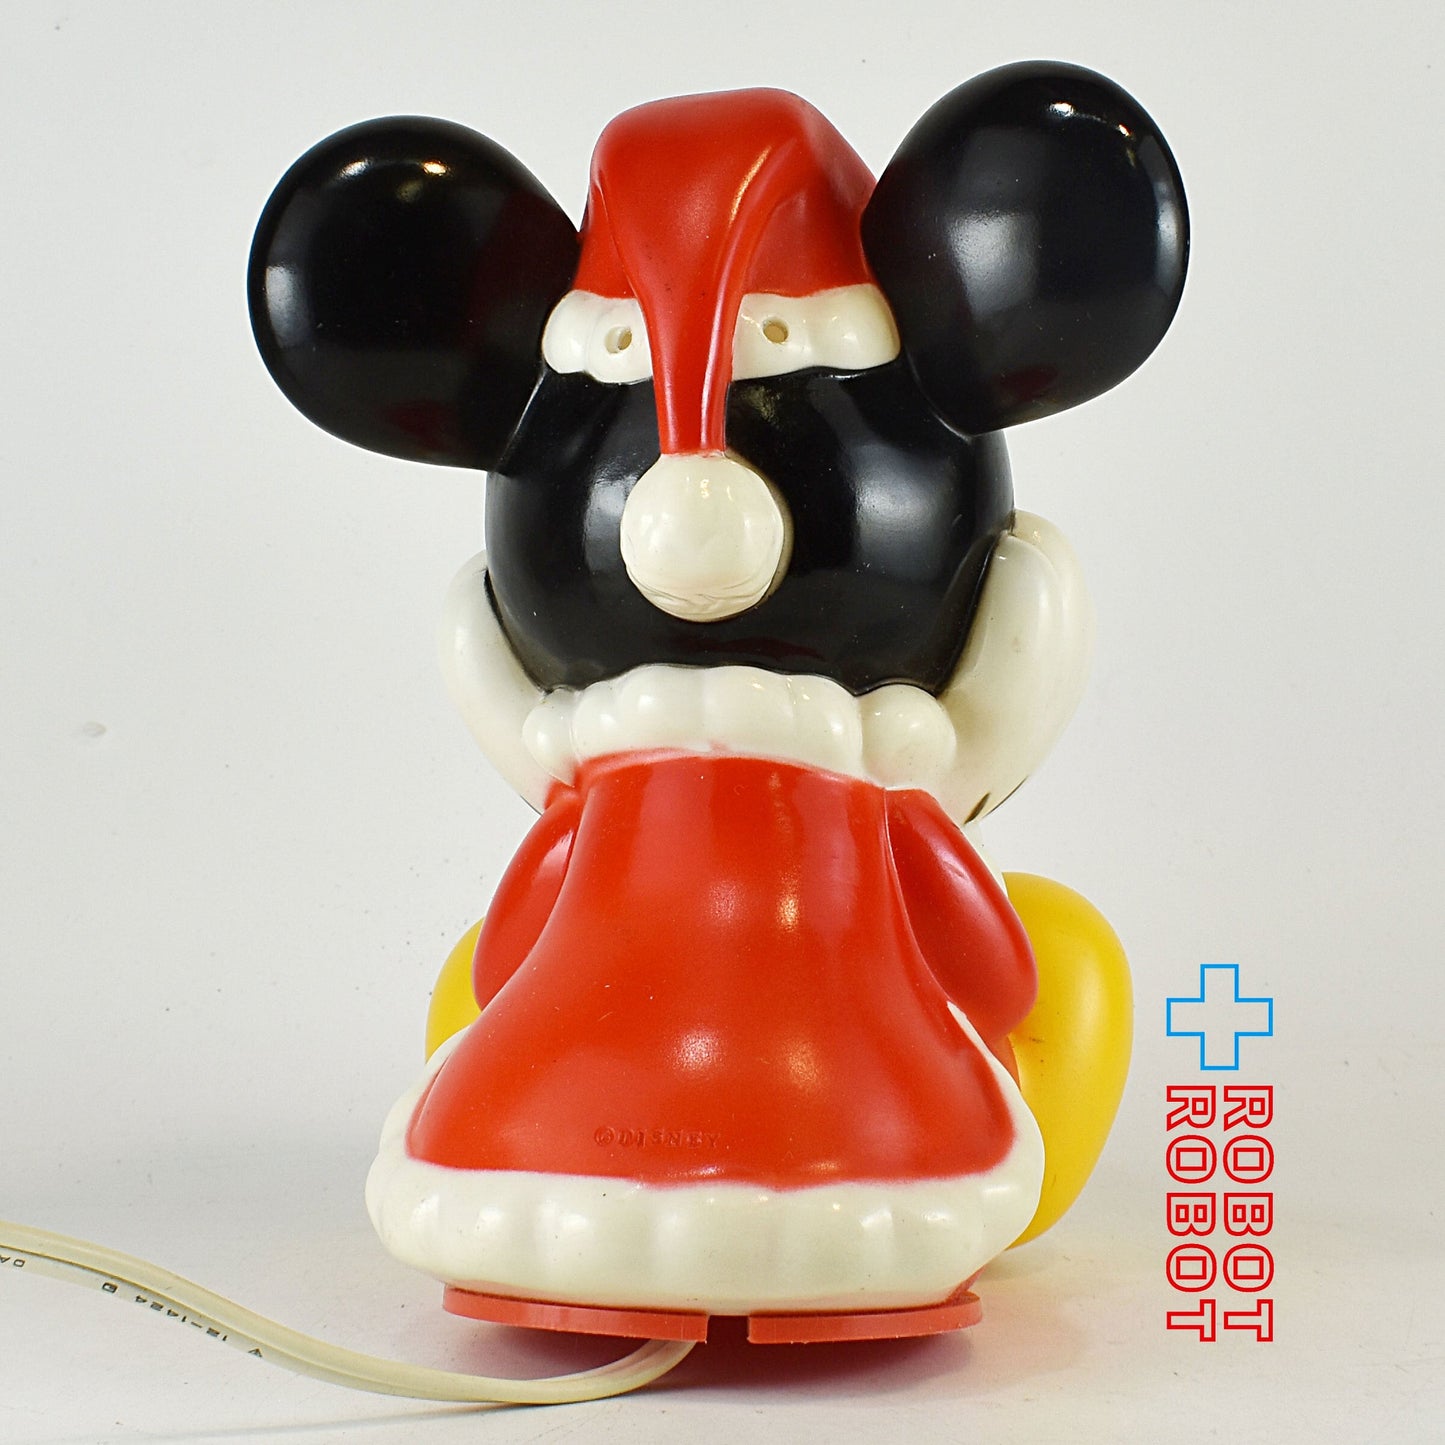 ディズニー ミッキーマウス クリスマス ライト イルミネーション